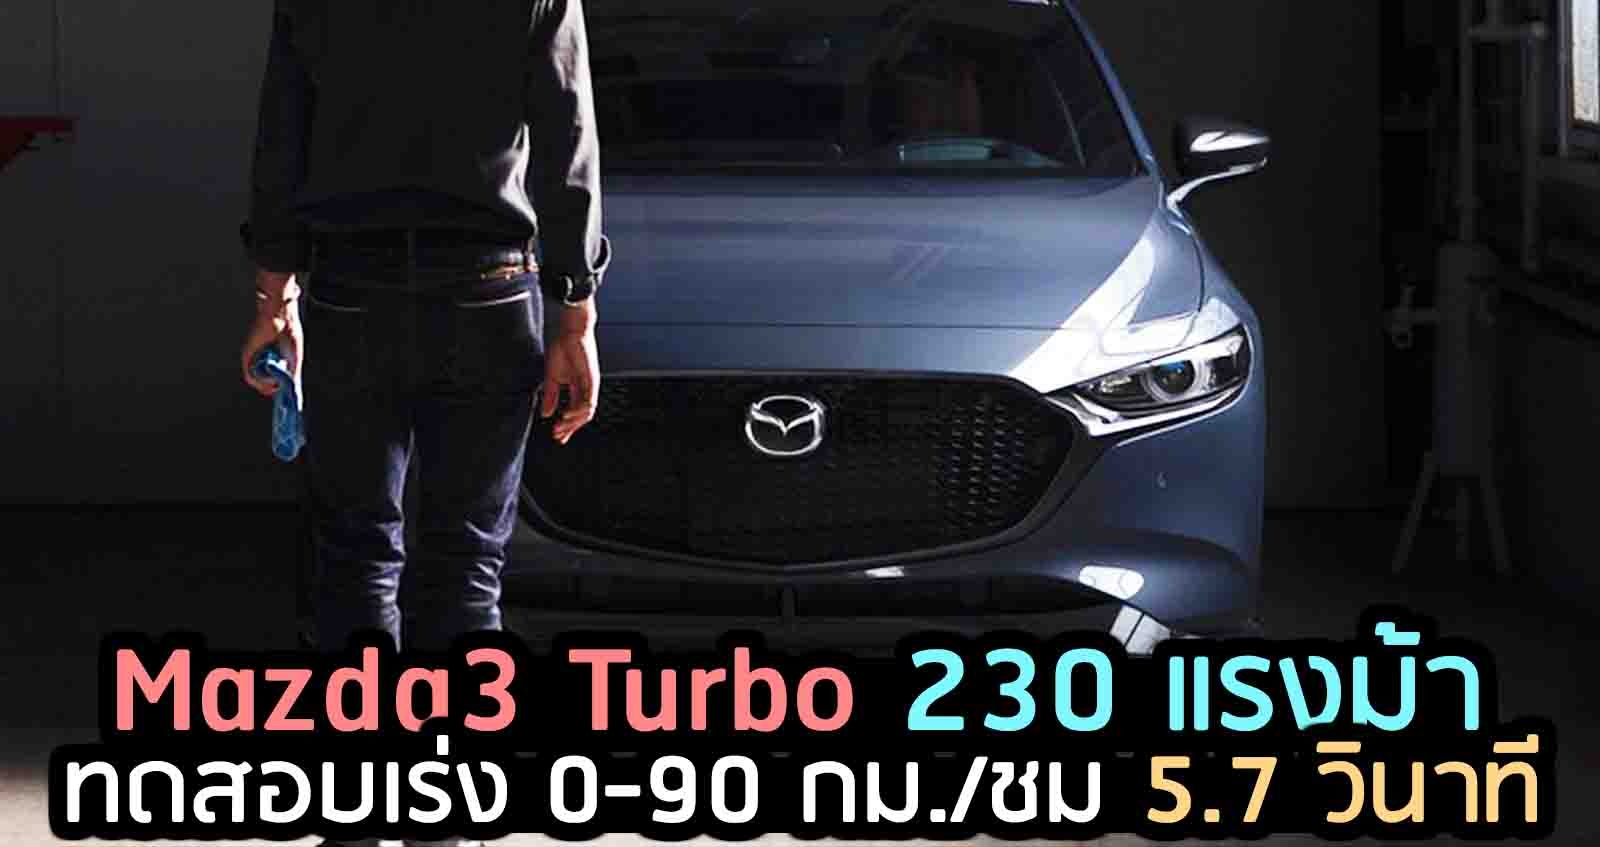 ทดสอบเร่ง Mazda3 Turbo 230 แรงม้า 0-90 กม./ชม. 5.7 วินาที